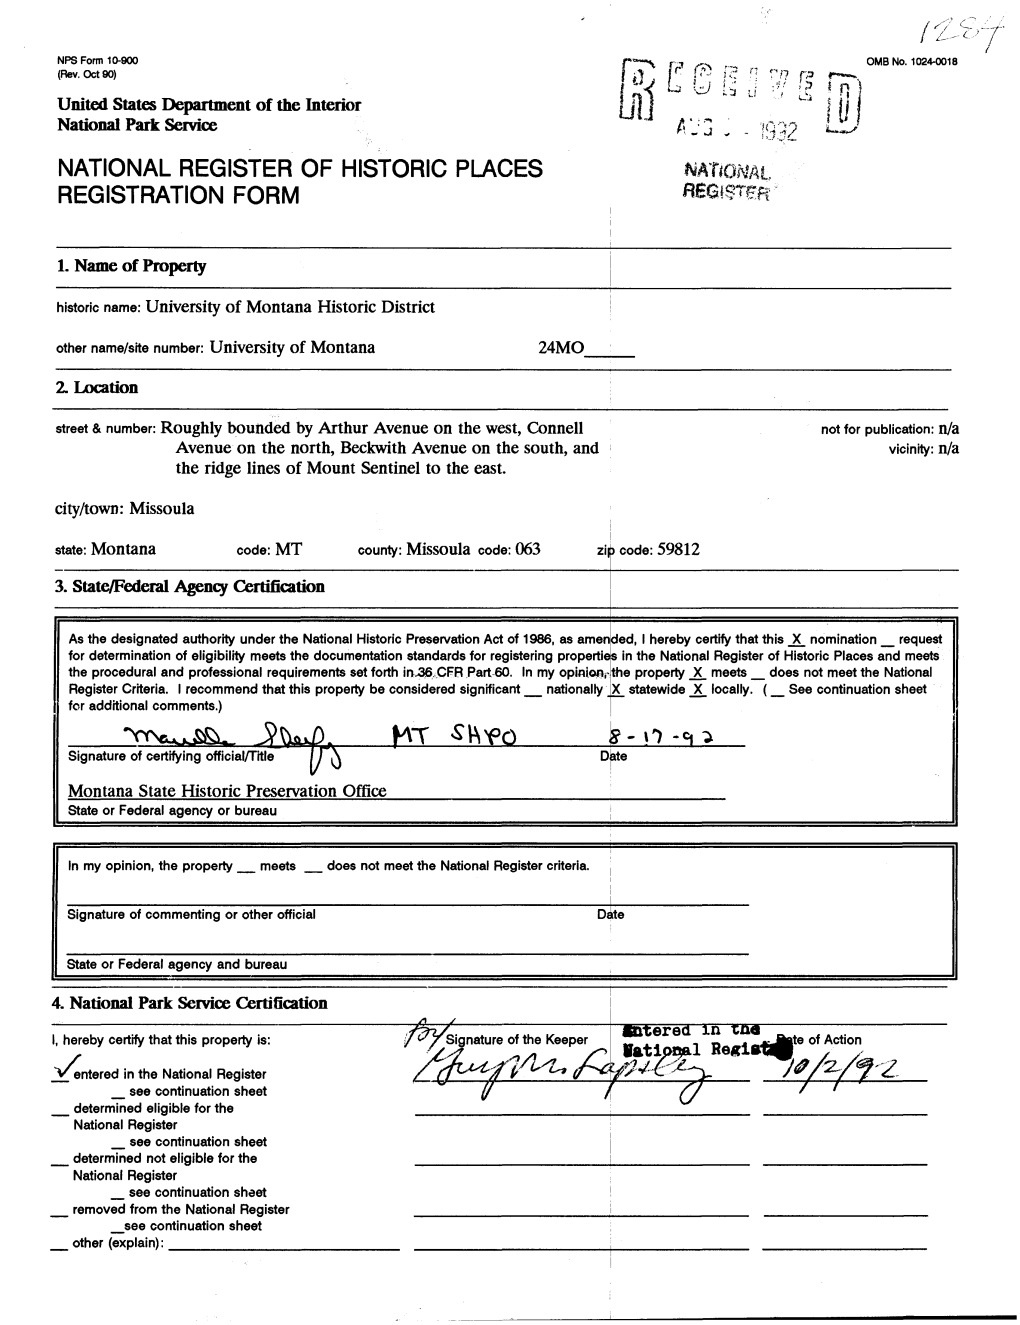 National Register of Historic Places Registration Form ^